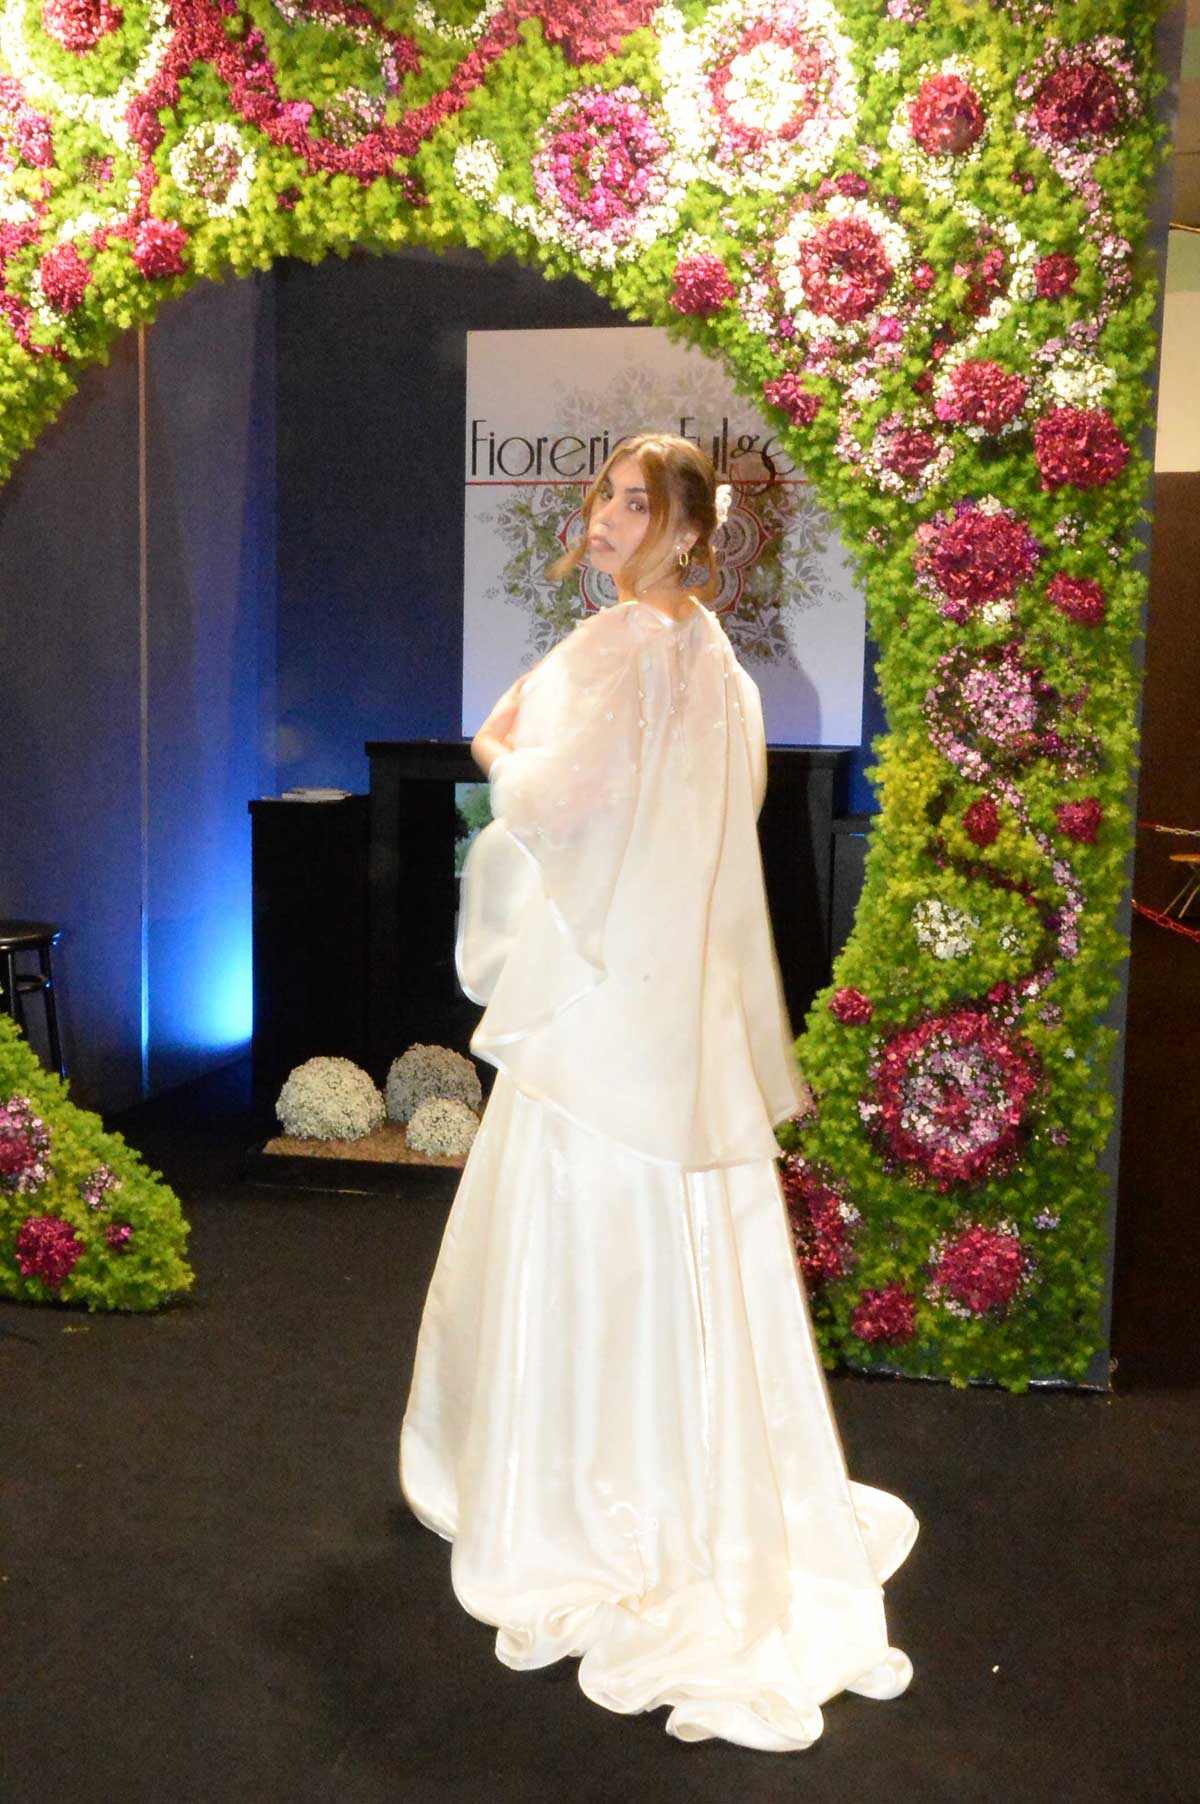 Presentazione abiti da sposa cerimonia matrimonio eventi web modelle shooting fotografie moda stilista abito Eleonora villa Fravili vicino Roma